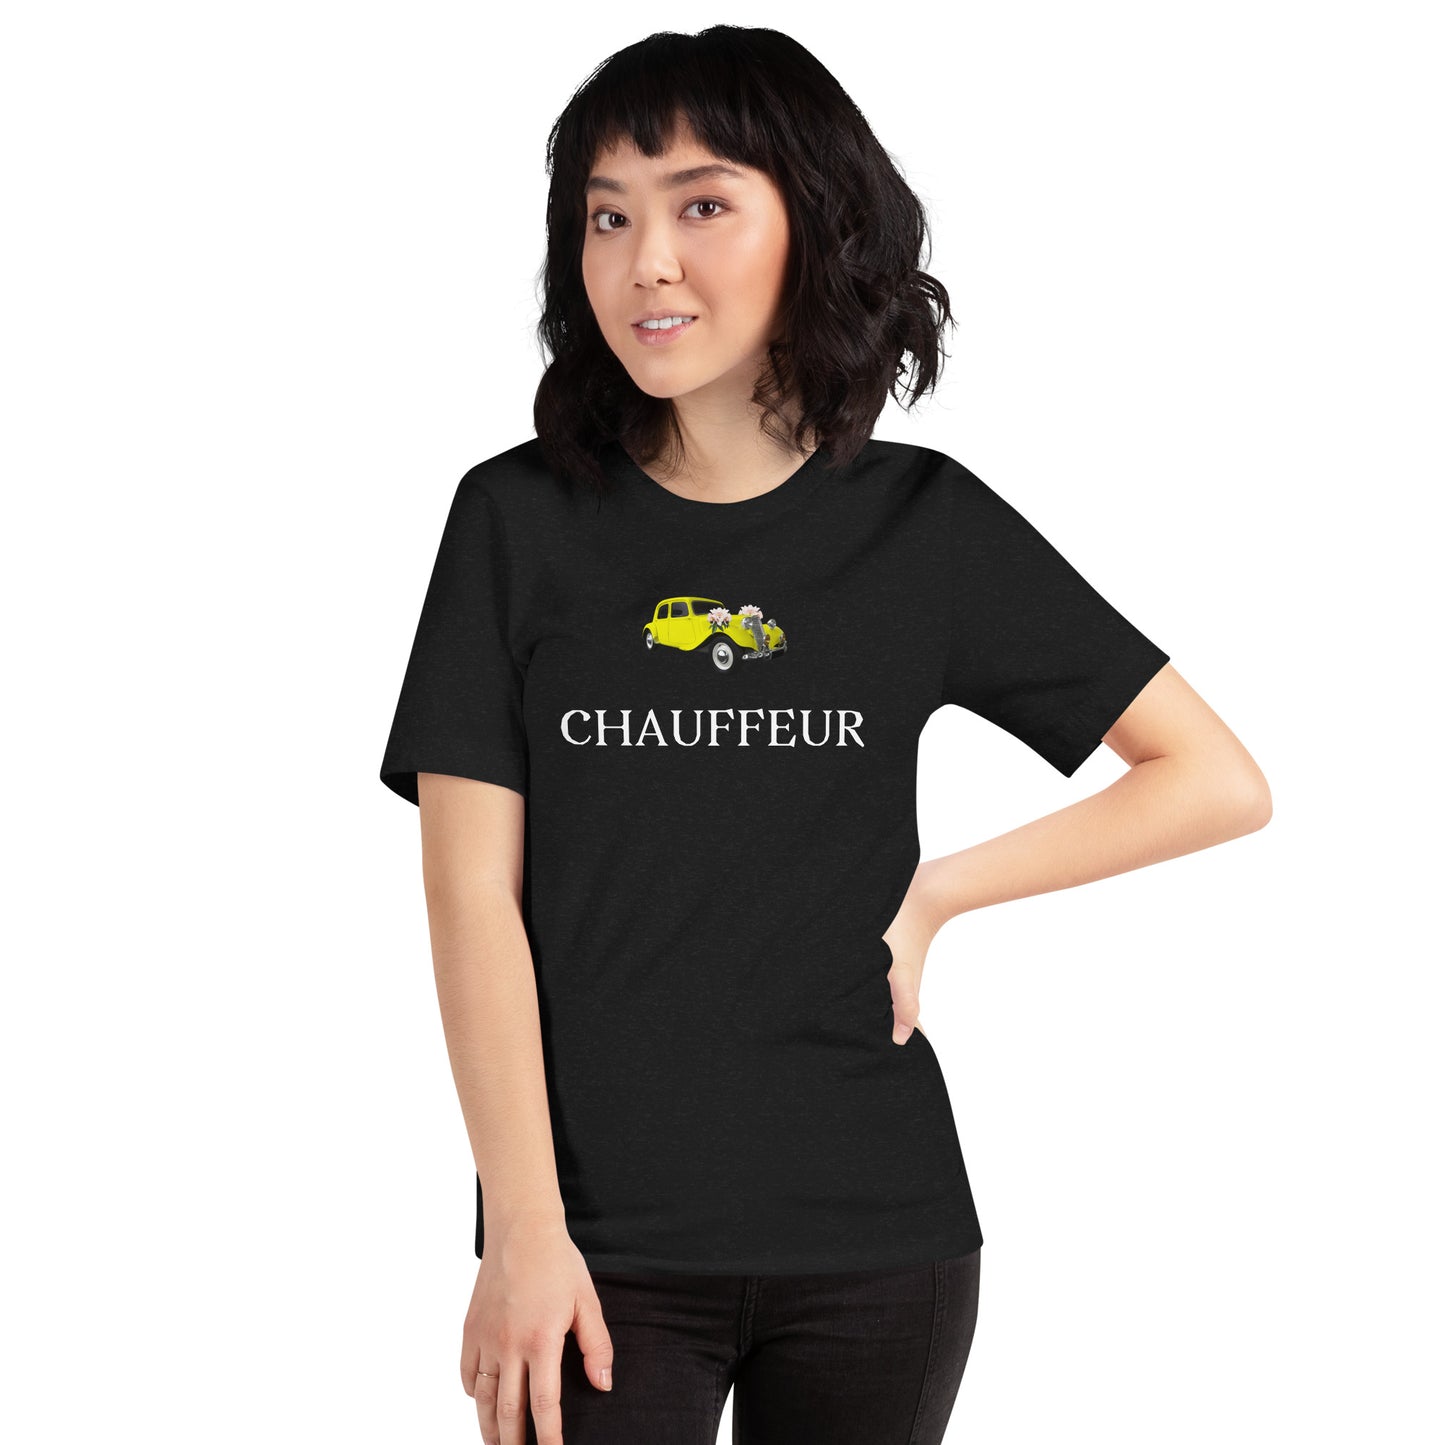 Chauffeur unisex t-shirt